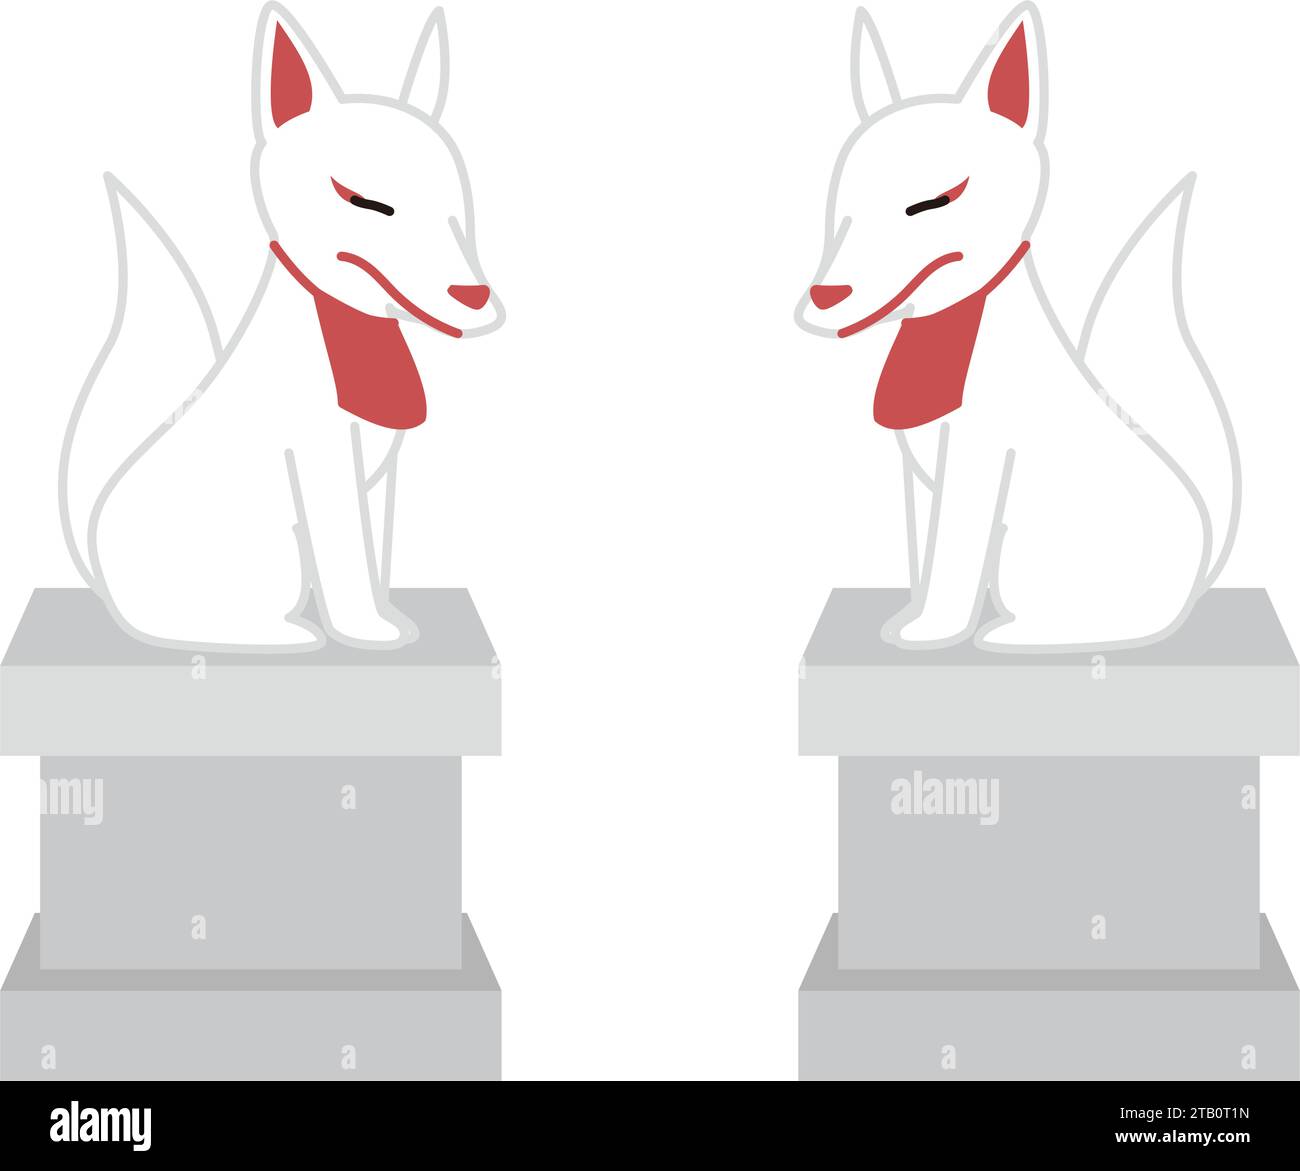 Zwei Inari-Statuen stehen einander gegenüber. Gott der Landwirtschaft in Form eines Fuchses. Stock Vektor